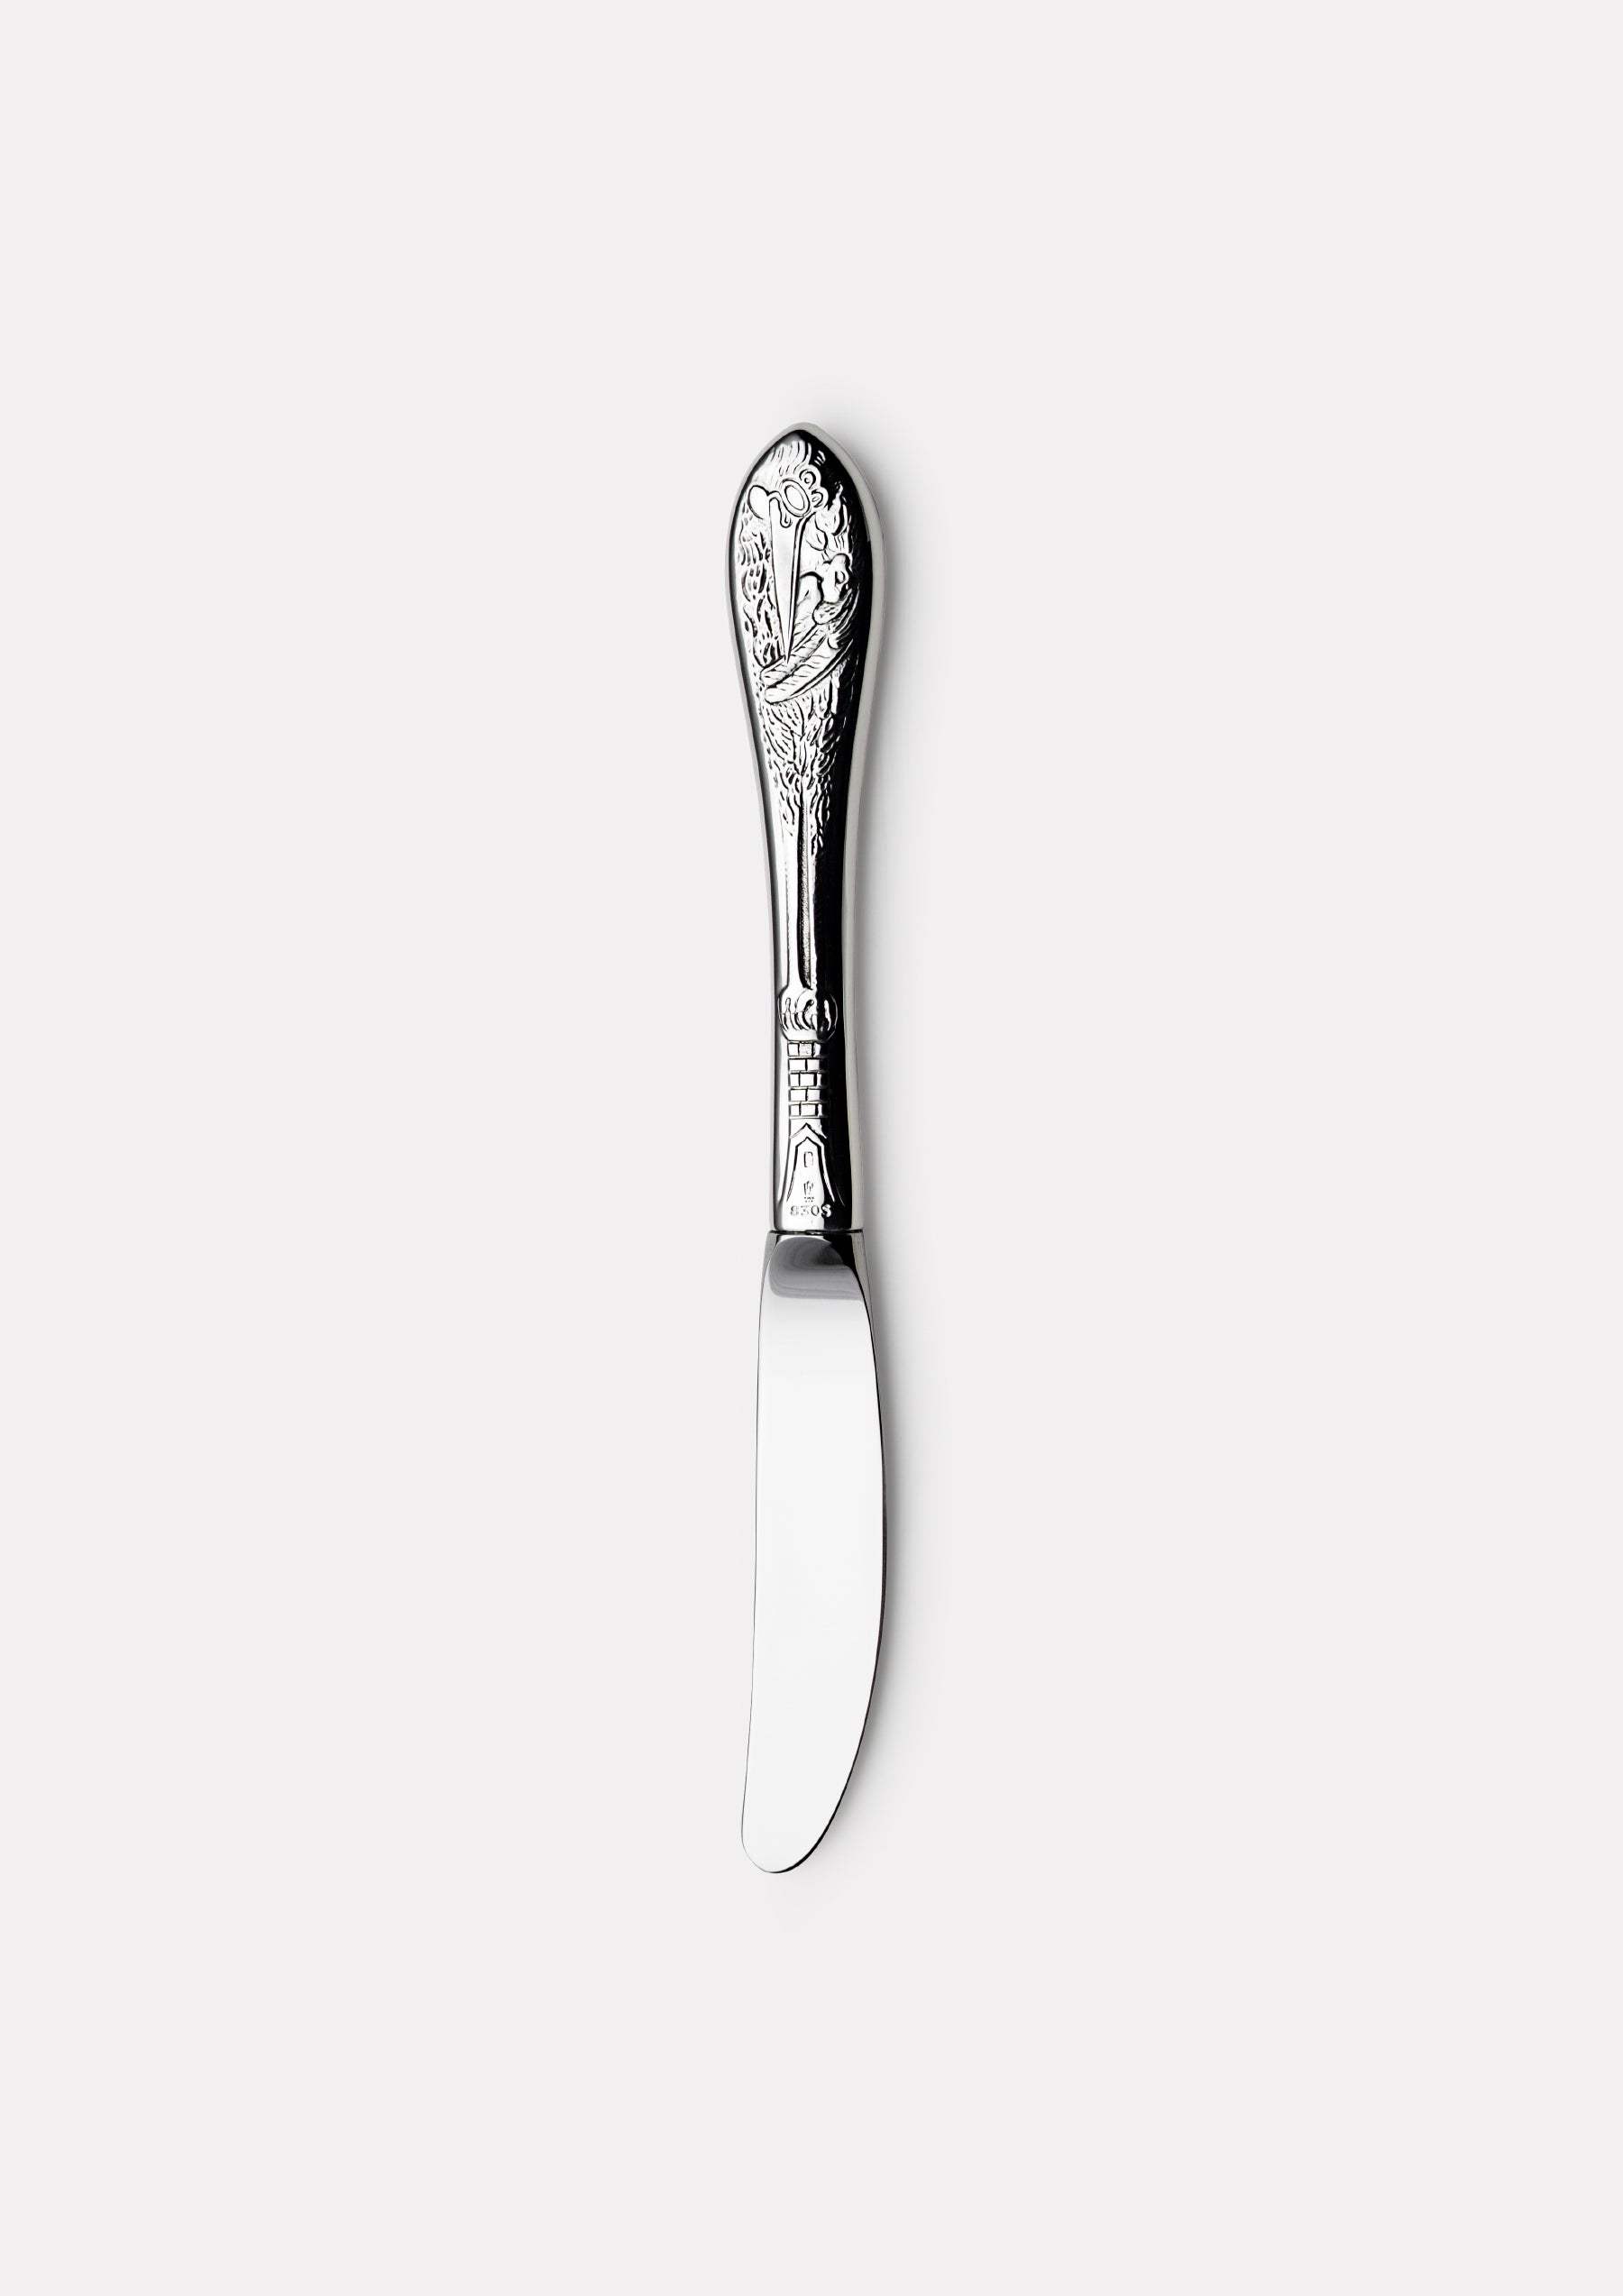 Stork children's knife